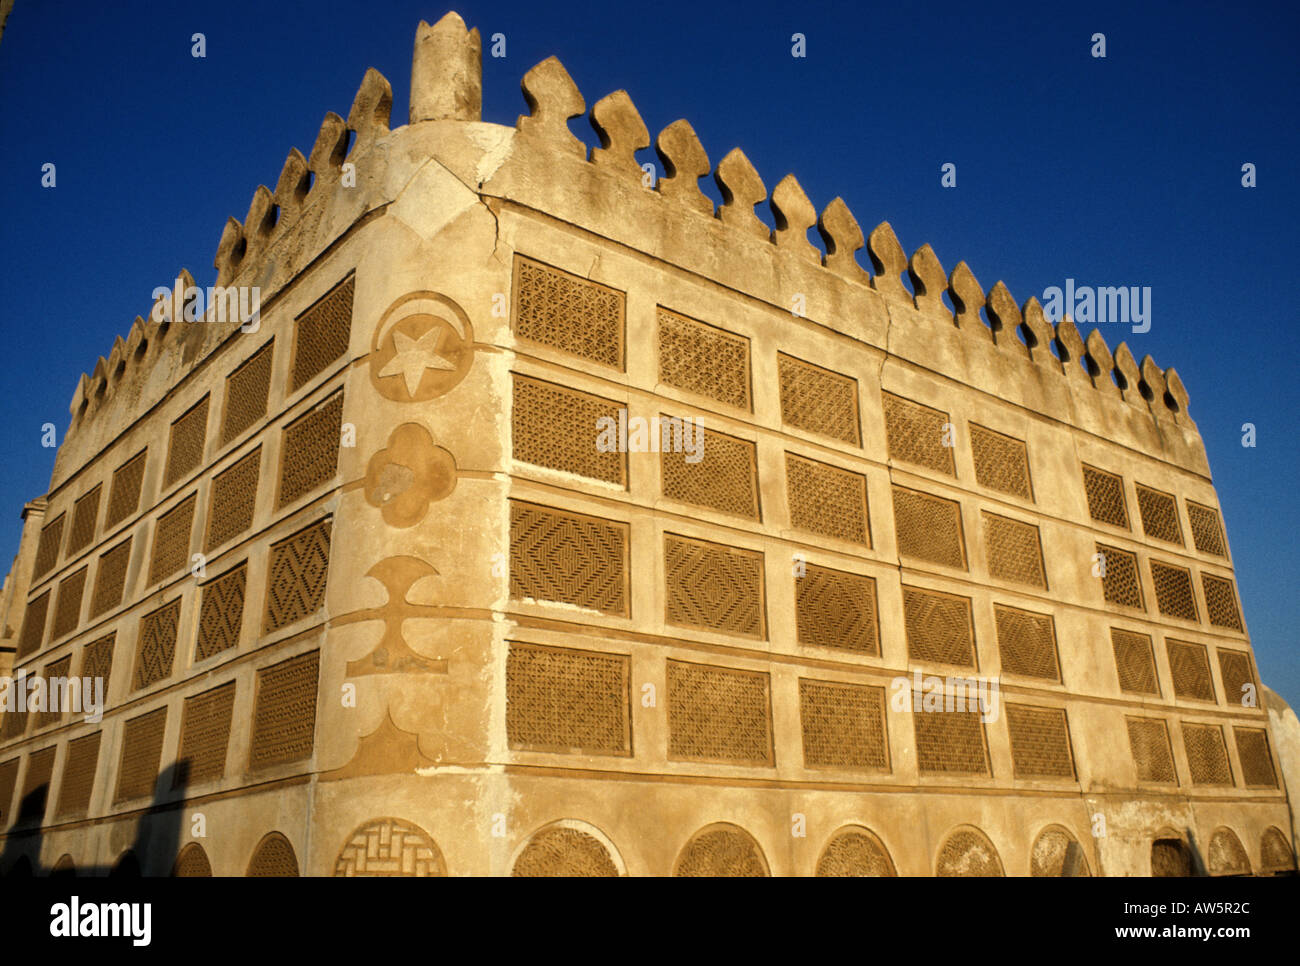 L'ancienne maison de marchands de perles à Bahreïn affiche le travail magistral de plâtre de naqsh, 1975 Banque D'Images